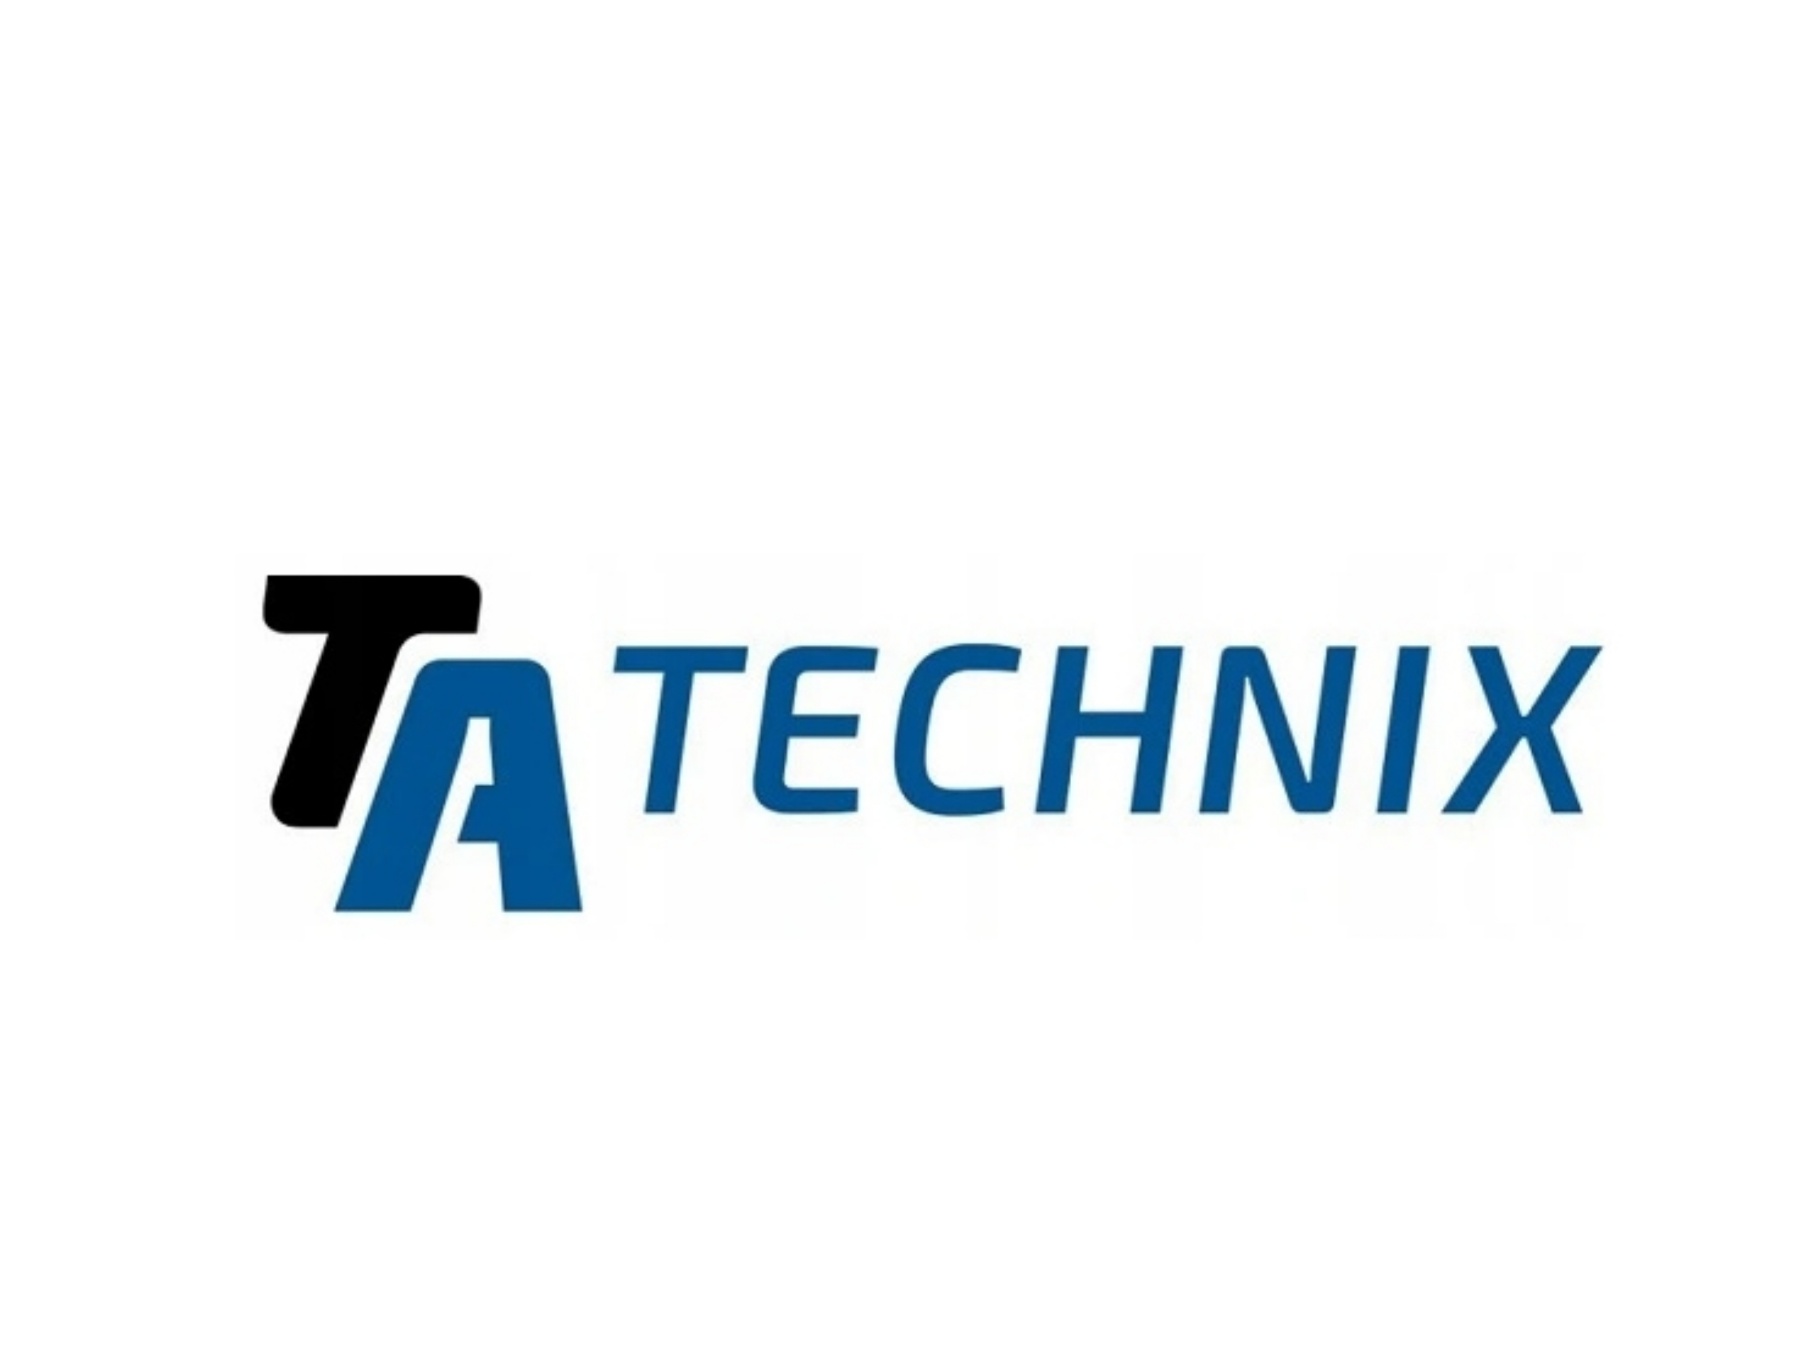 TA Technix